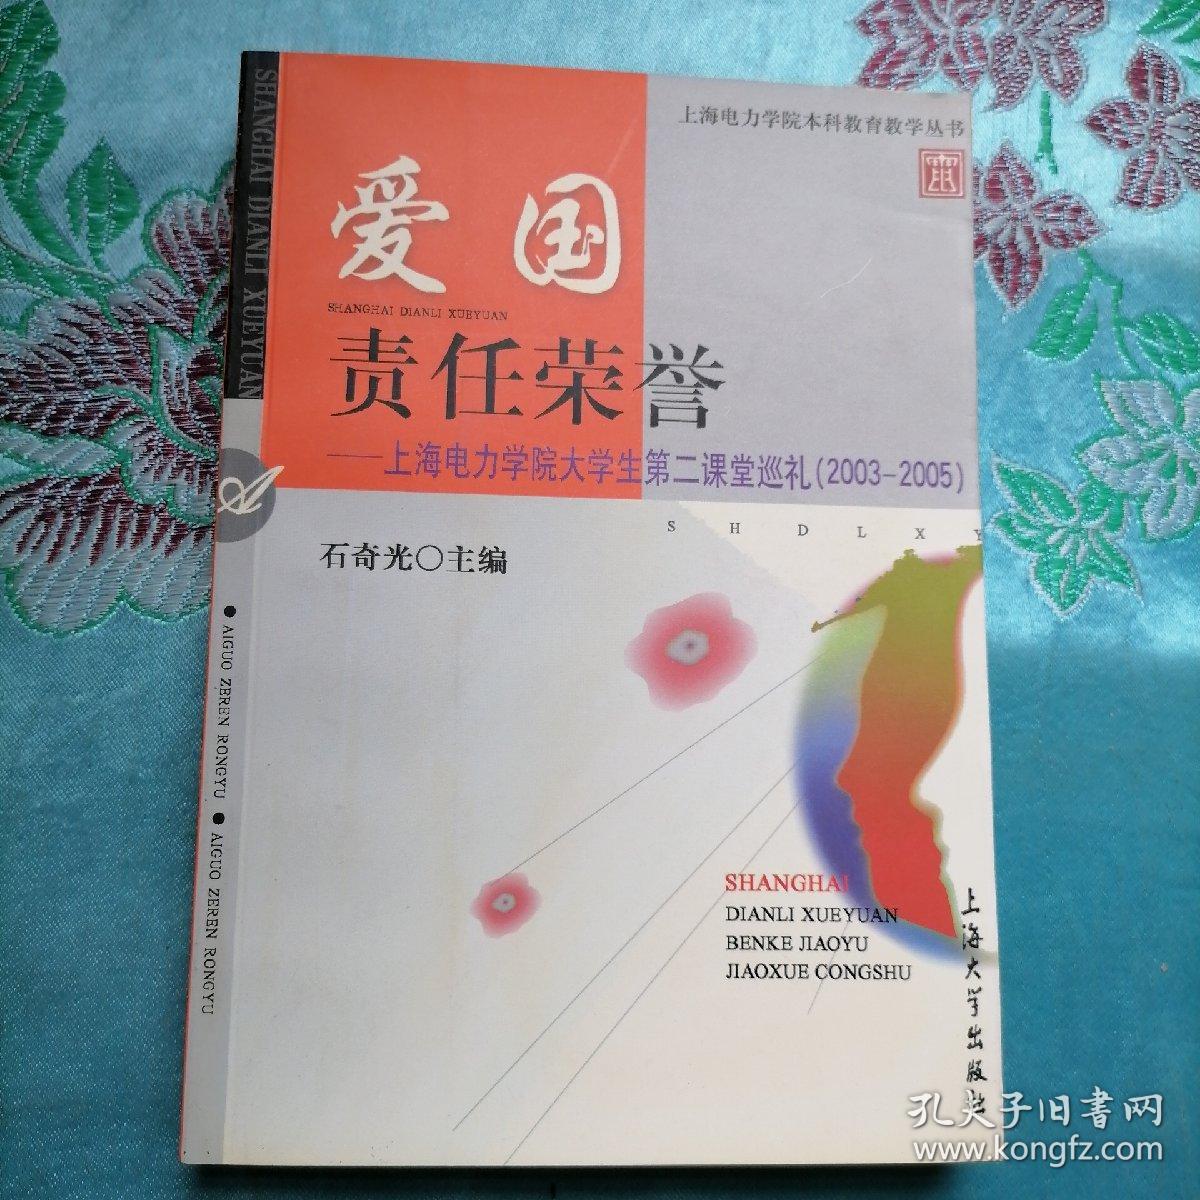 爱国 责任 荣誉:上海电力学院大学生第二课堂巡礼(2003-2005)